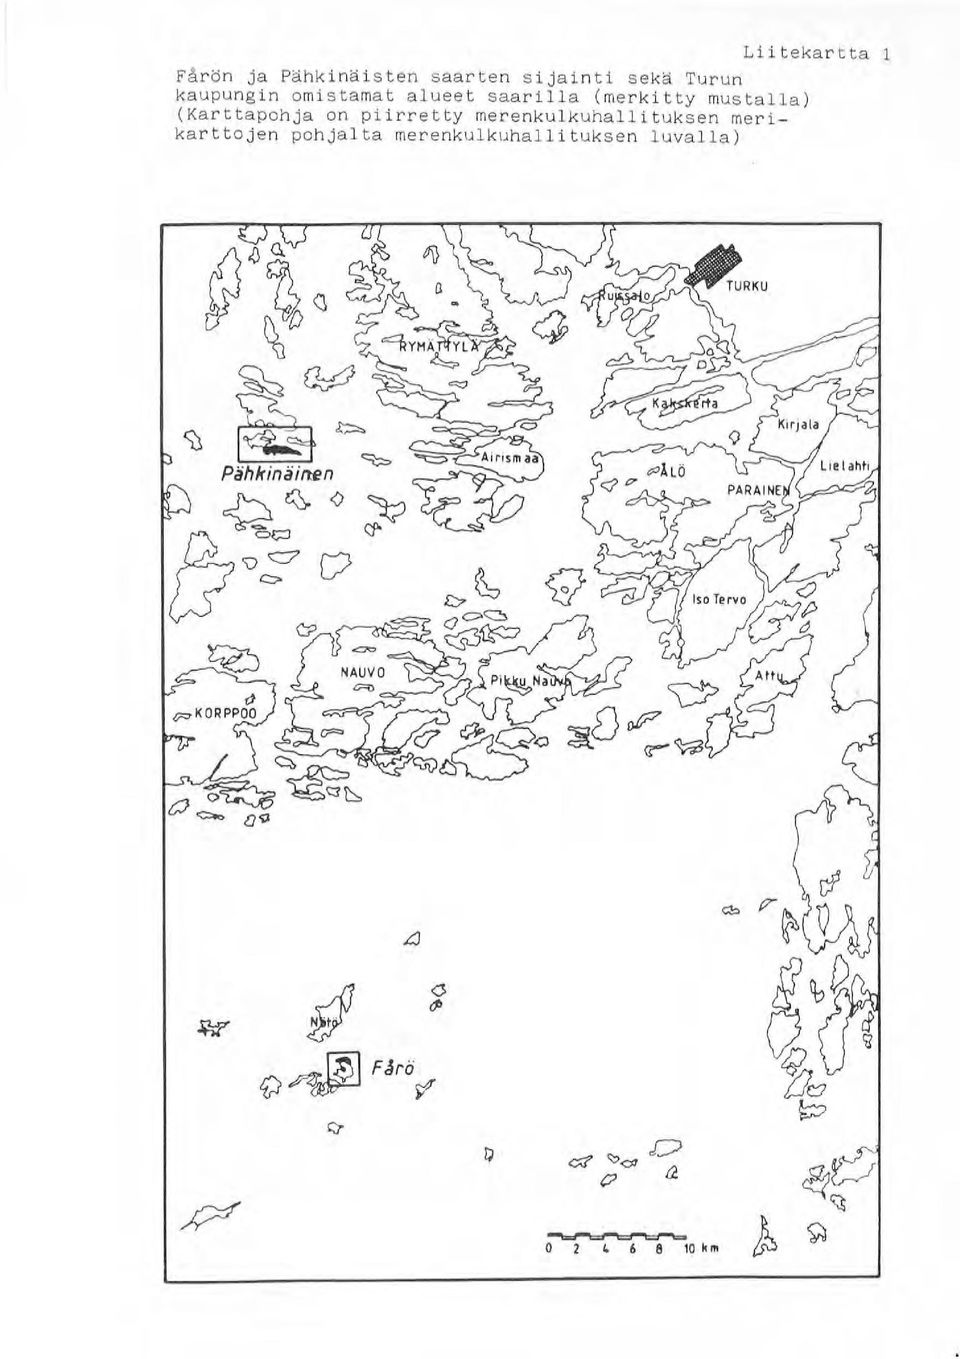 (Karttapohja on piirretty merenkulkuhallituksen merikar ttojen